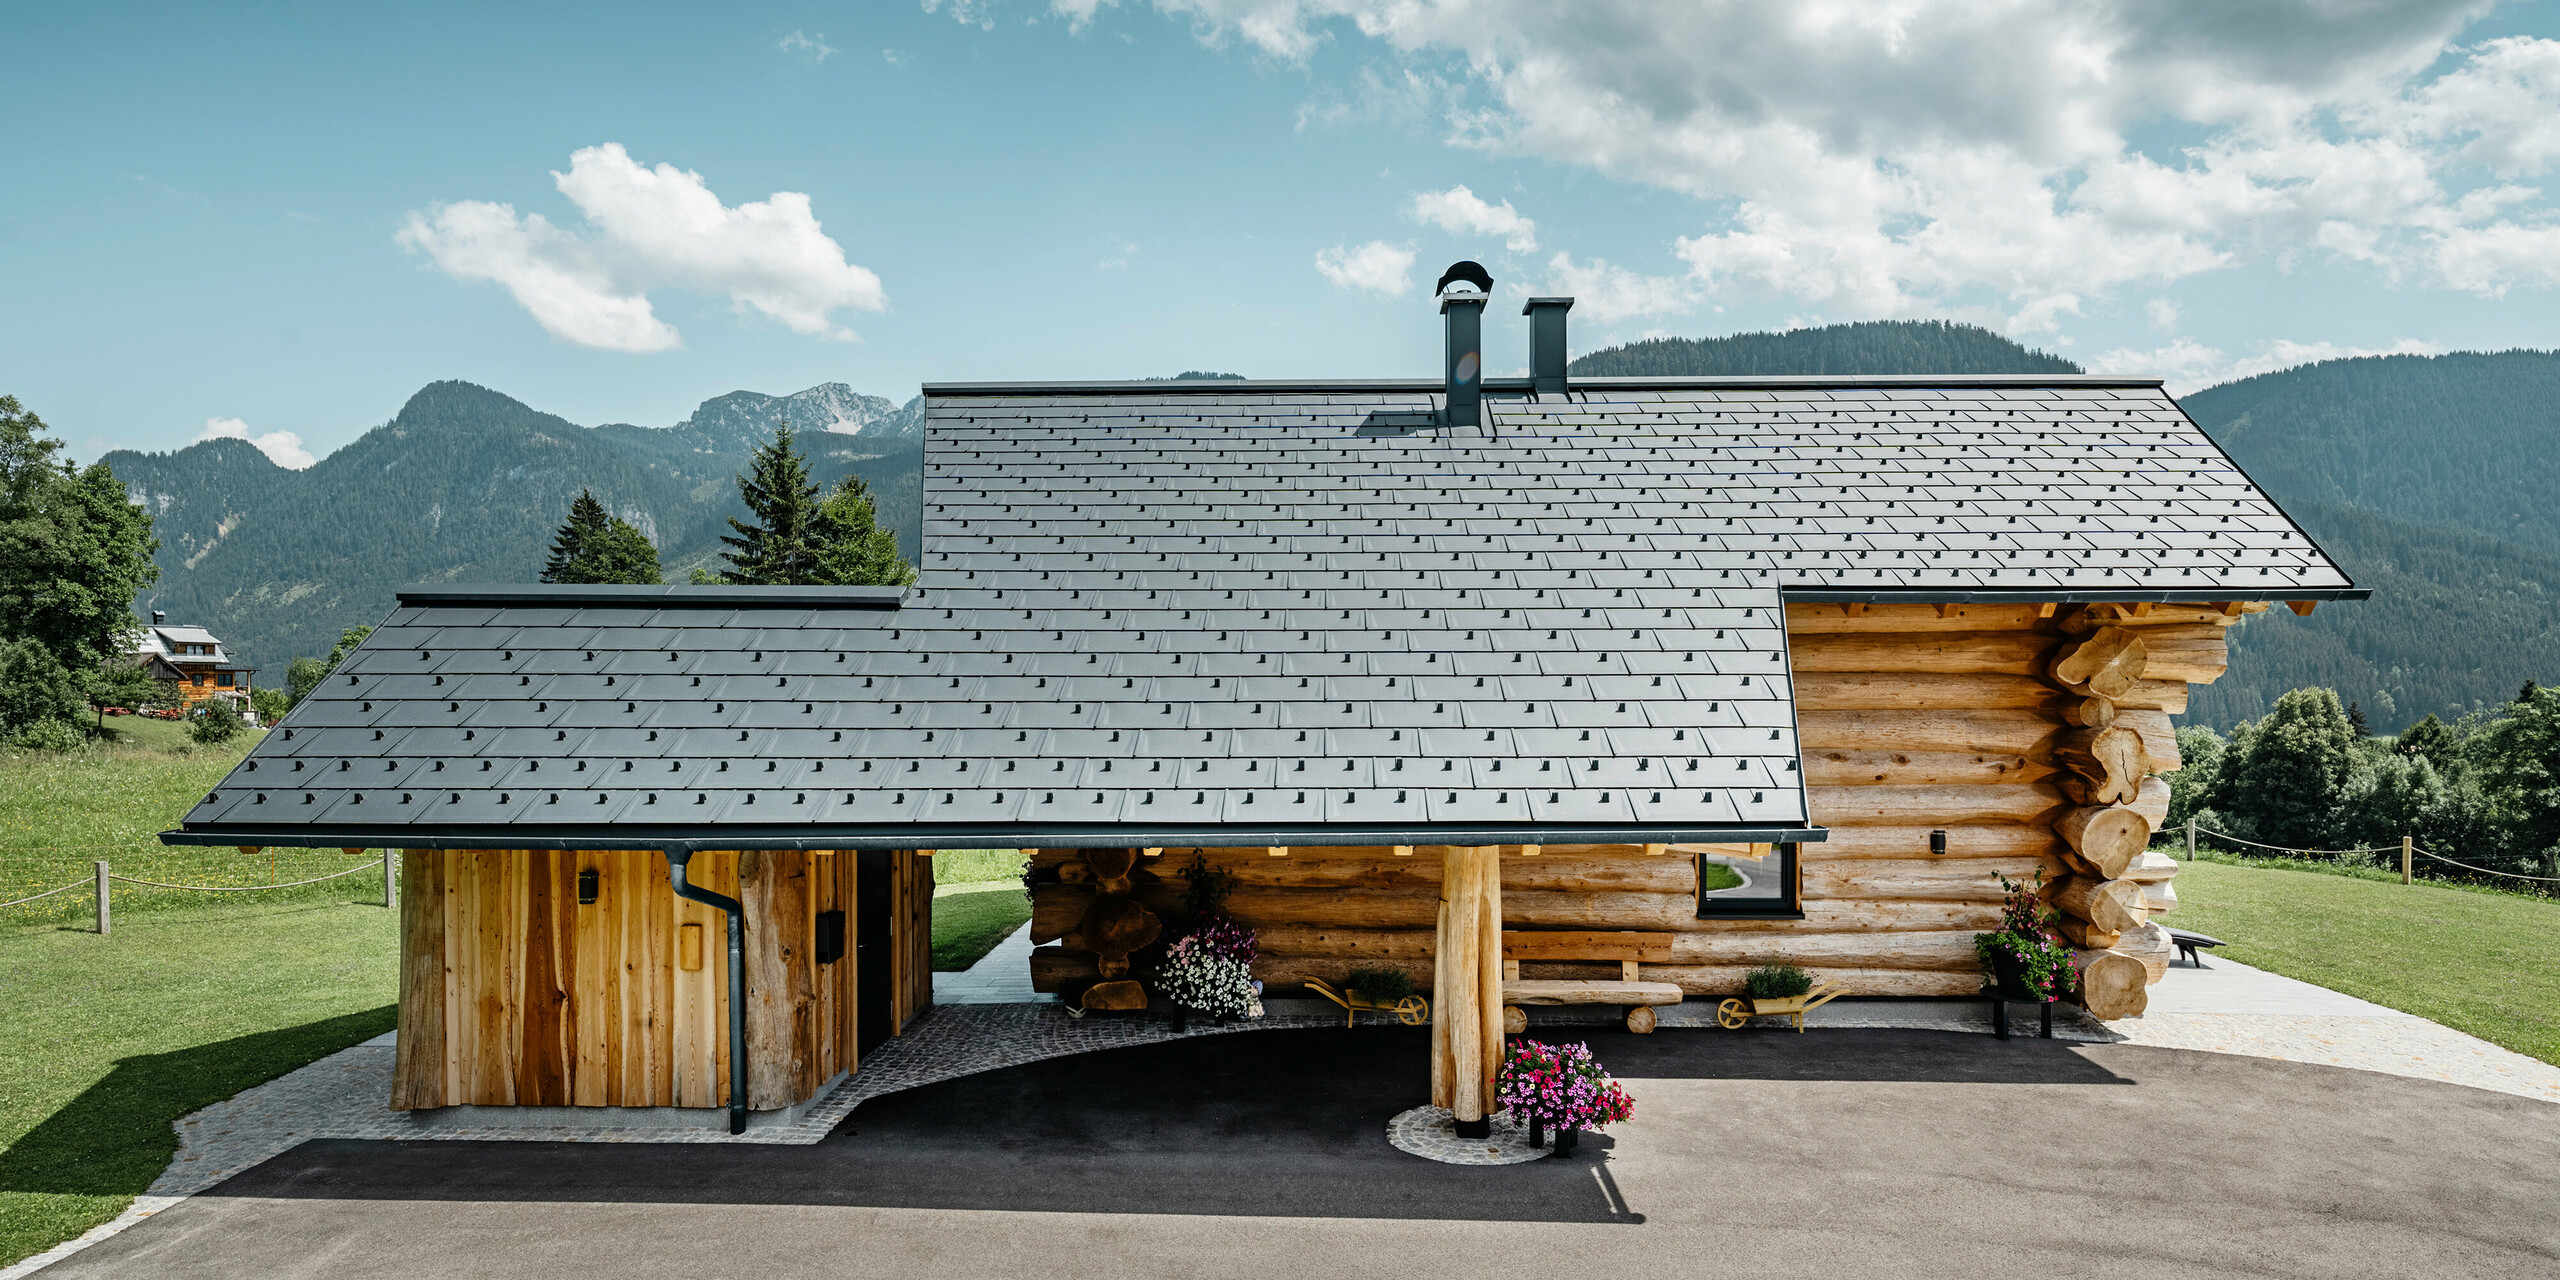 Stranski pogled na vabljivo leseno hišo v kraju Gosau v Avstriji, ki jo odlikuje robustna aluminijasta streha PREFA s strešnimi ploščami R.16 v P.10 antracitni barvi. Slika prikazuje harmonično povezavo med tradicionalno gradnjo iz hlodov in moderno, kakovostno strešno kritino, ki odraža dolgo življenjsko dobo in estetski dizajn aluminijastih izdelkov PREFA. Lesena hiša stoji na ozadju zelenih gričev in veličastne gorske panorame, ki poudarja naravno okolje.